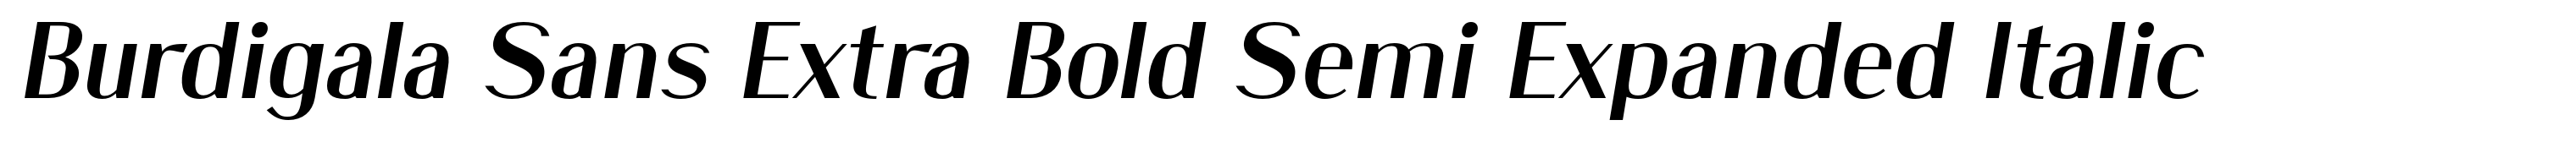 Burdigala Sans Extra Bold Semi Expanded Italic